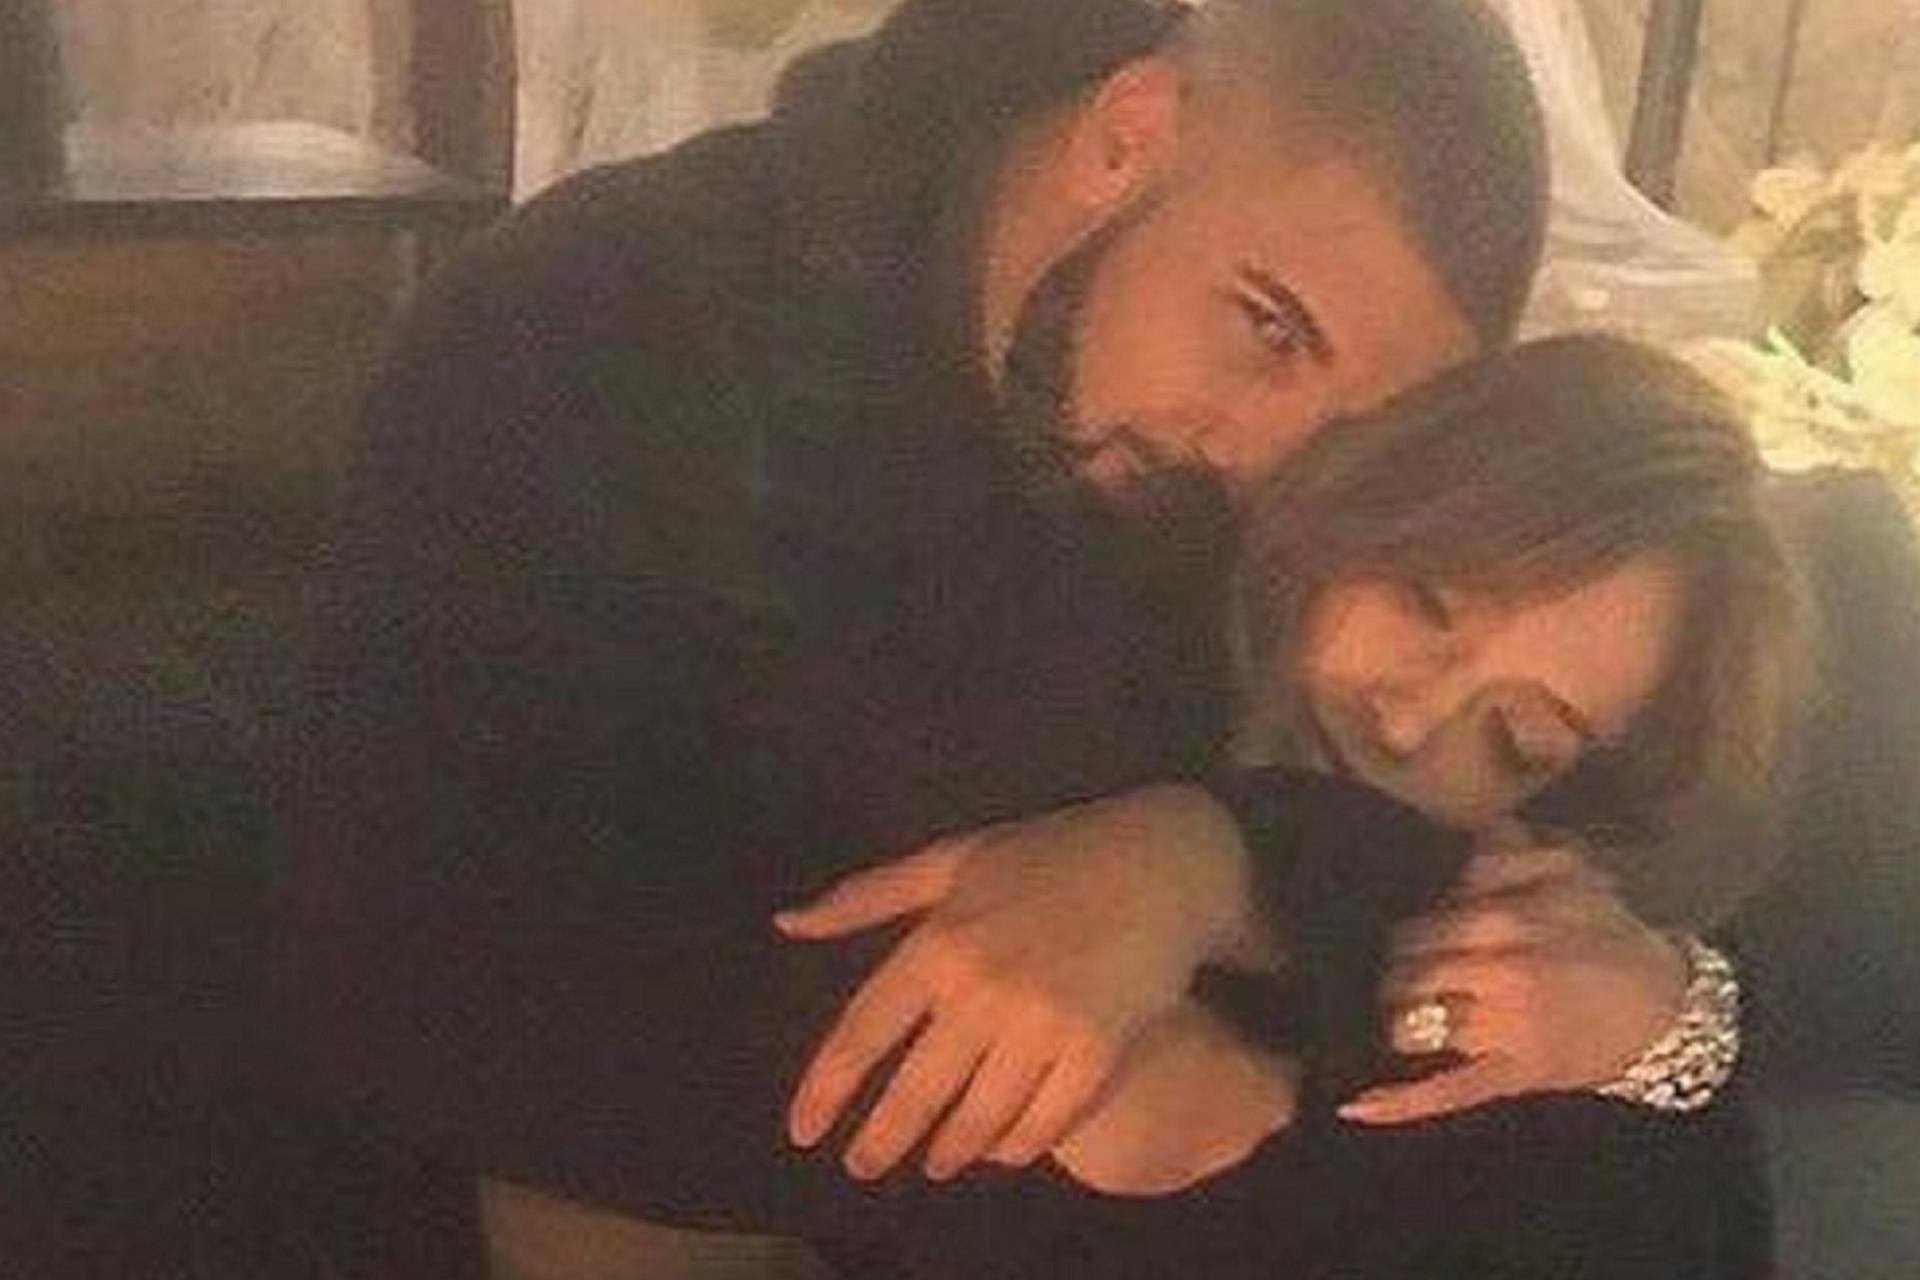 Drake: Ende 2016 bis Anfang 2017 posierte Jennifer Lopez auf ihrem Instagram Profil mit dem Rapper. Offizielle Auftritte zu zweit fielen jedoch aus.